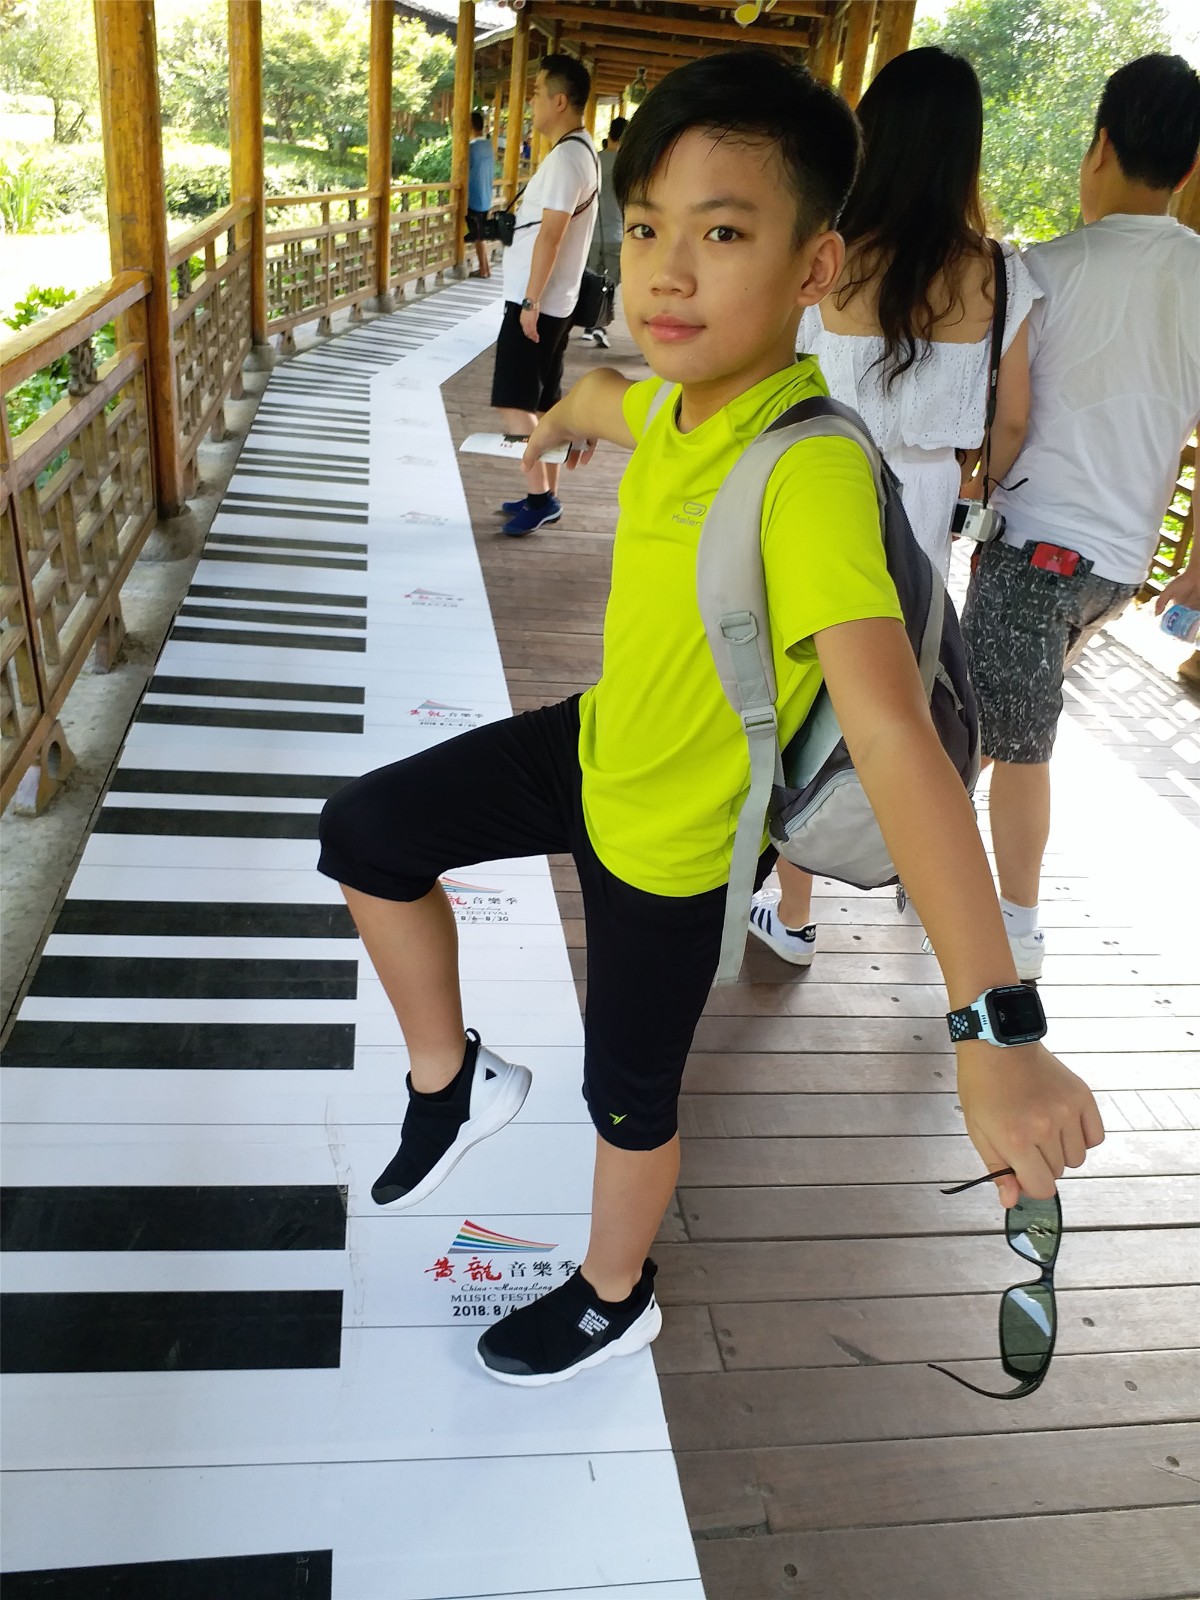 热烈祝贺我校136班张骏臣获得2019年香港“金紫荆”国际青少年钢琴大赛湖南赛区特金奖！